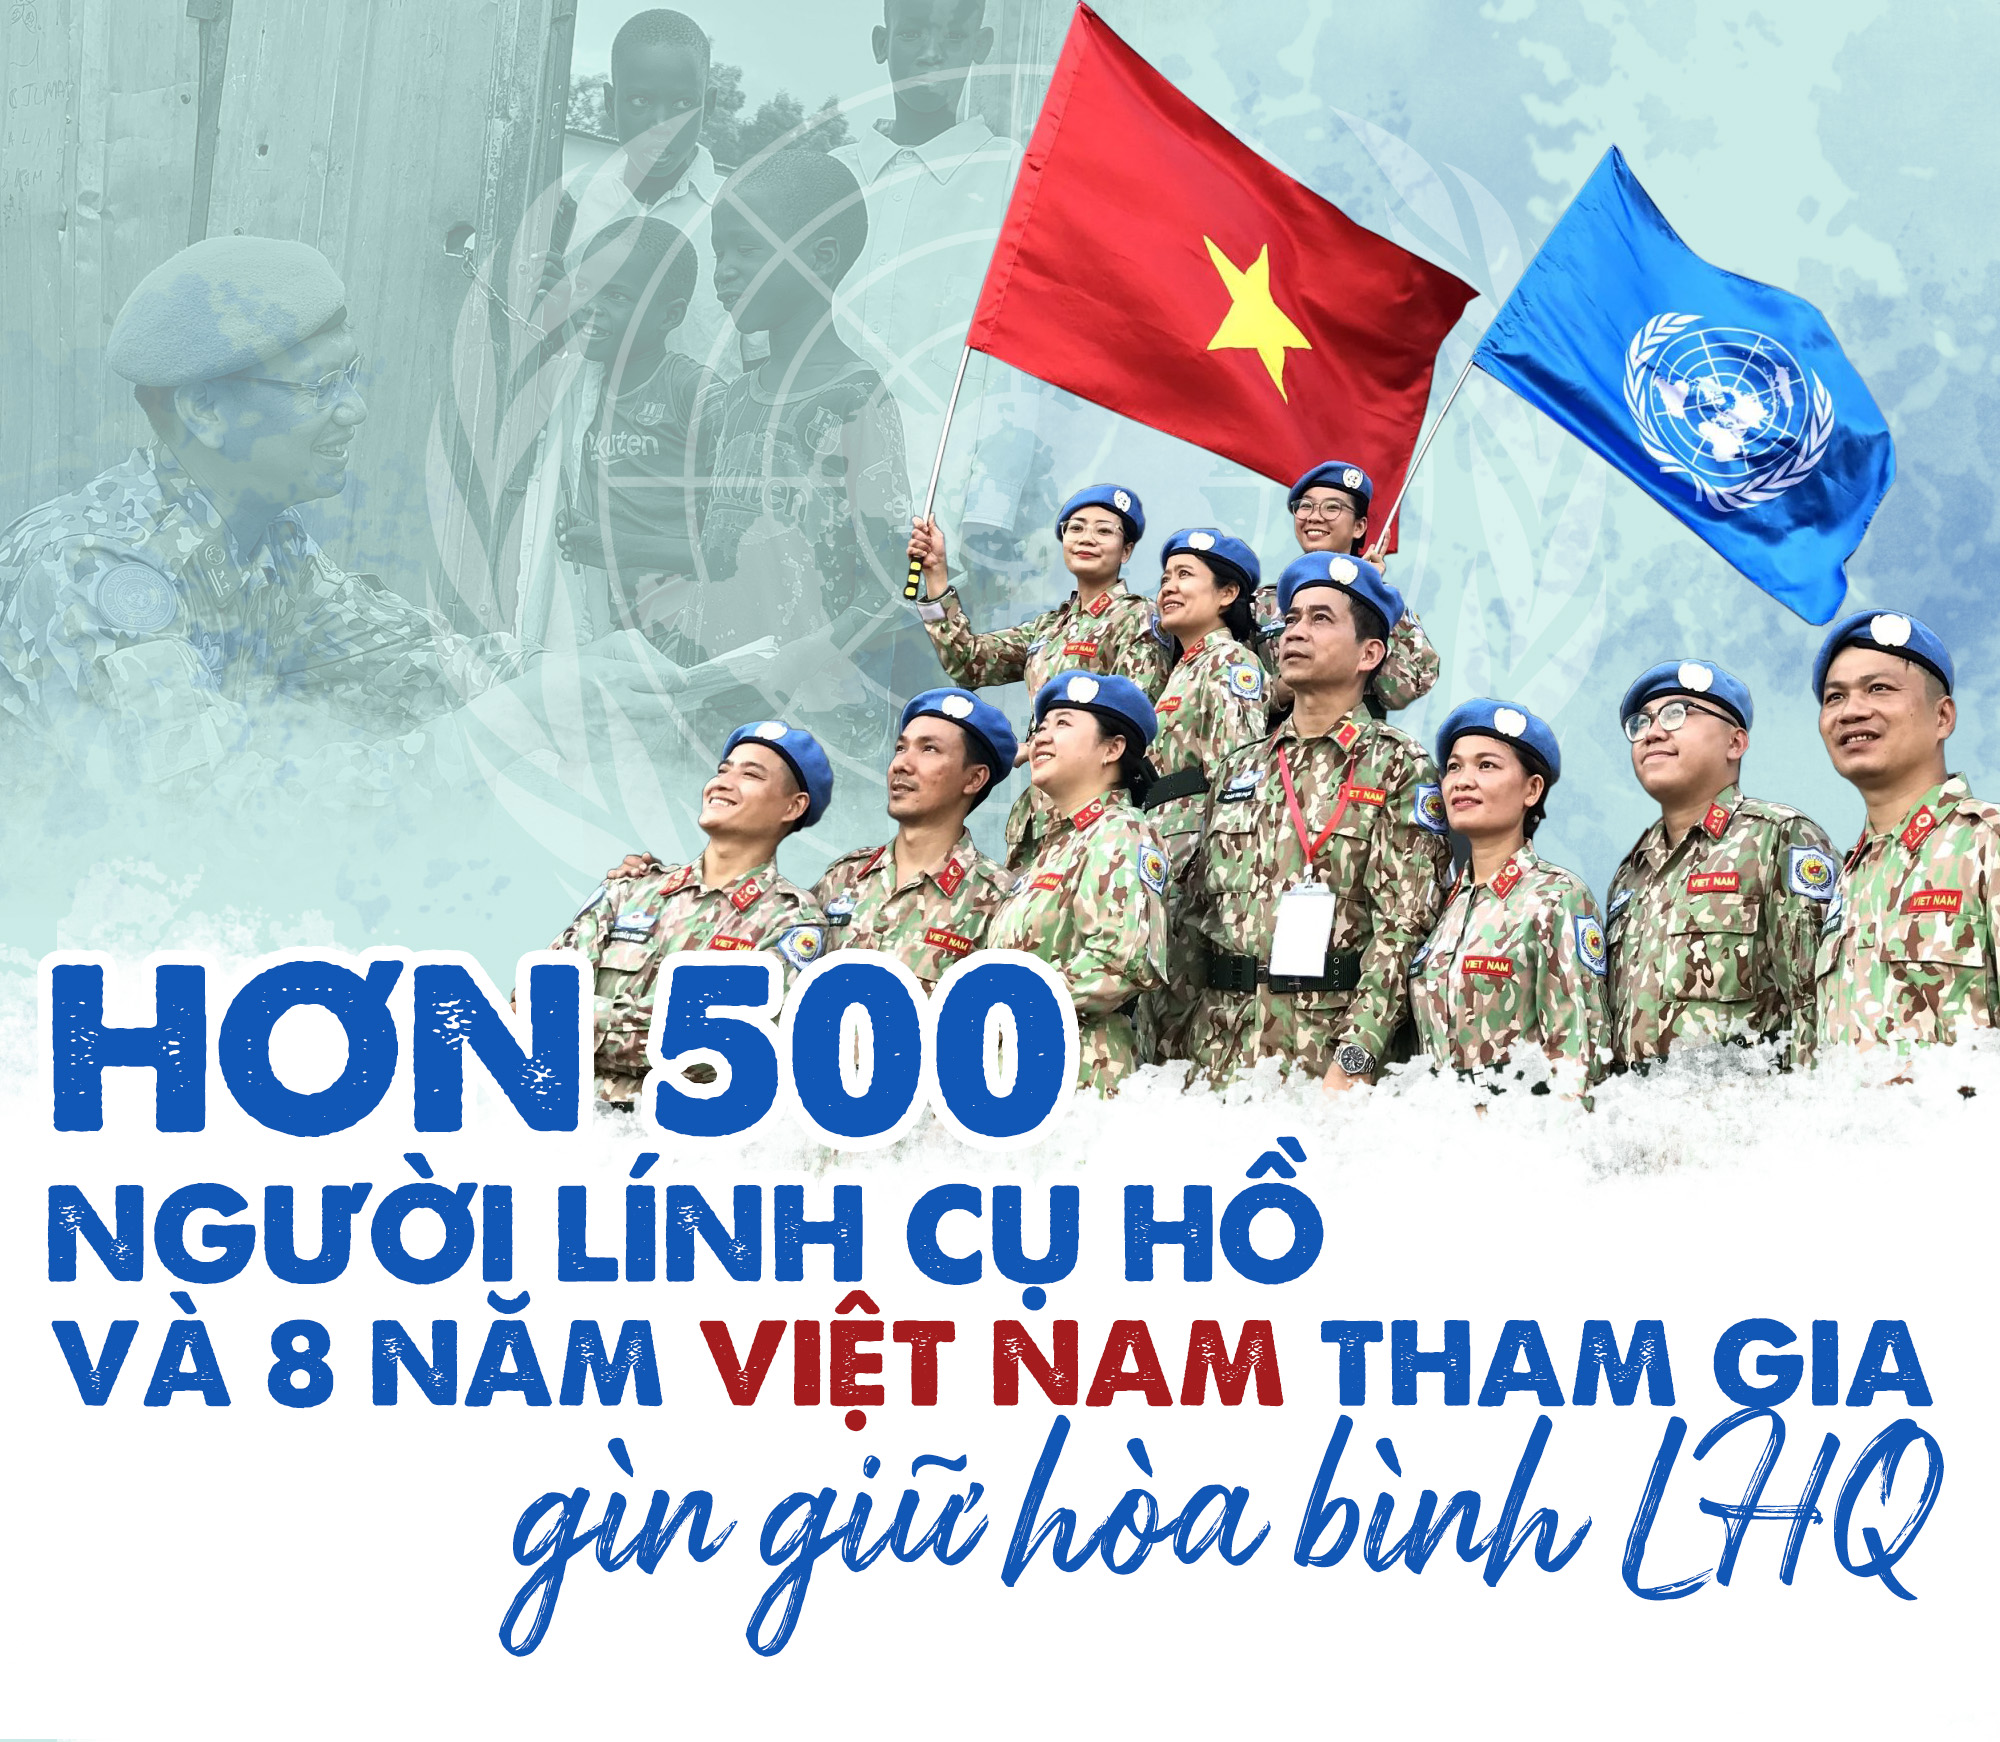 Hơn 500 người lính Cụ Hồ và 8 năm Việt Nam tham gia gìn giữ hòa bình LHQ |  VOV.VN